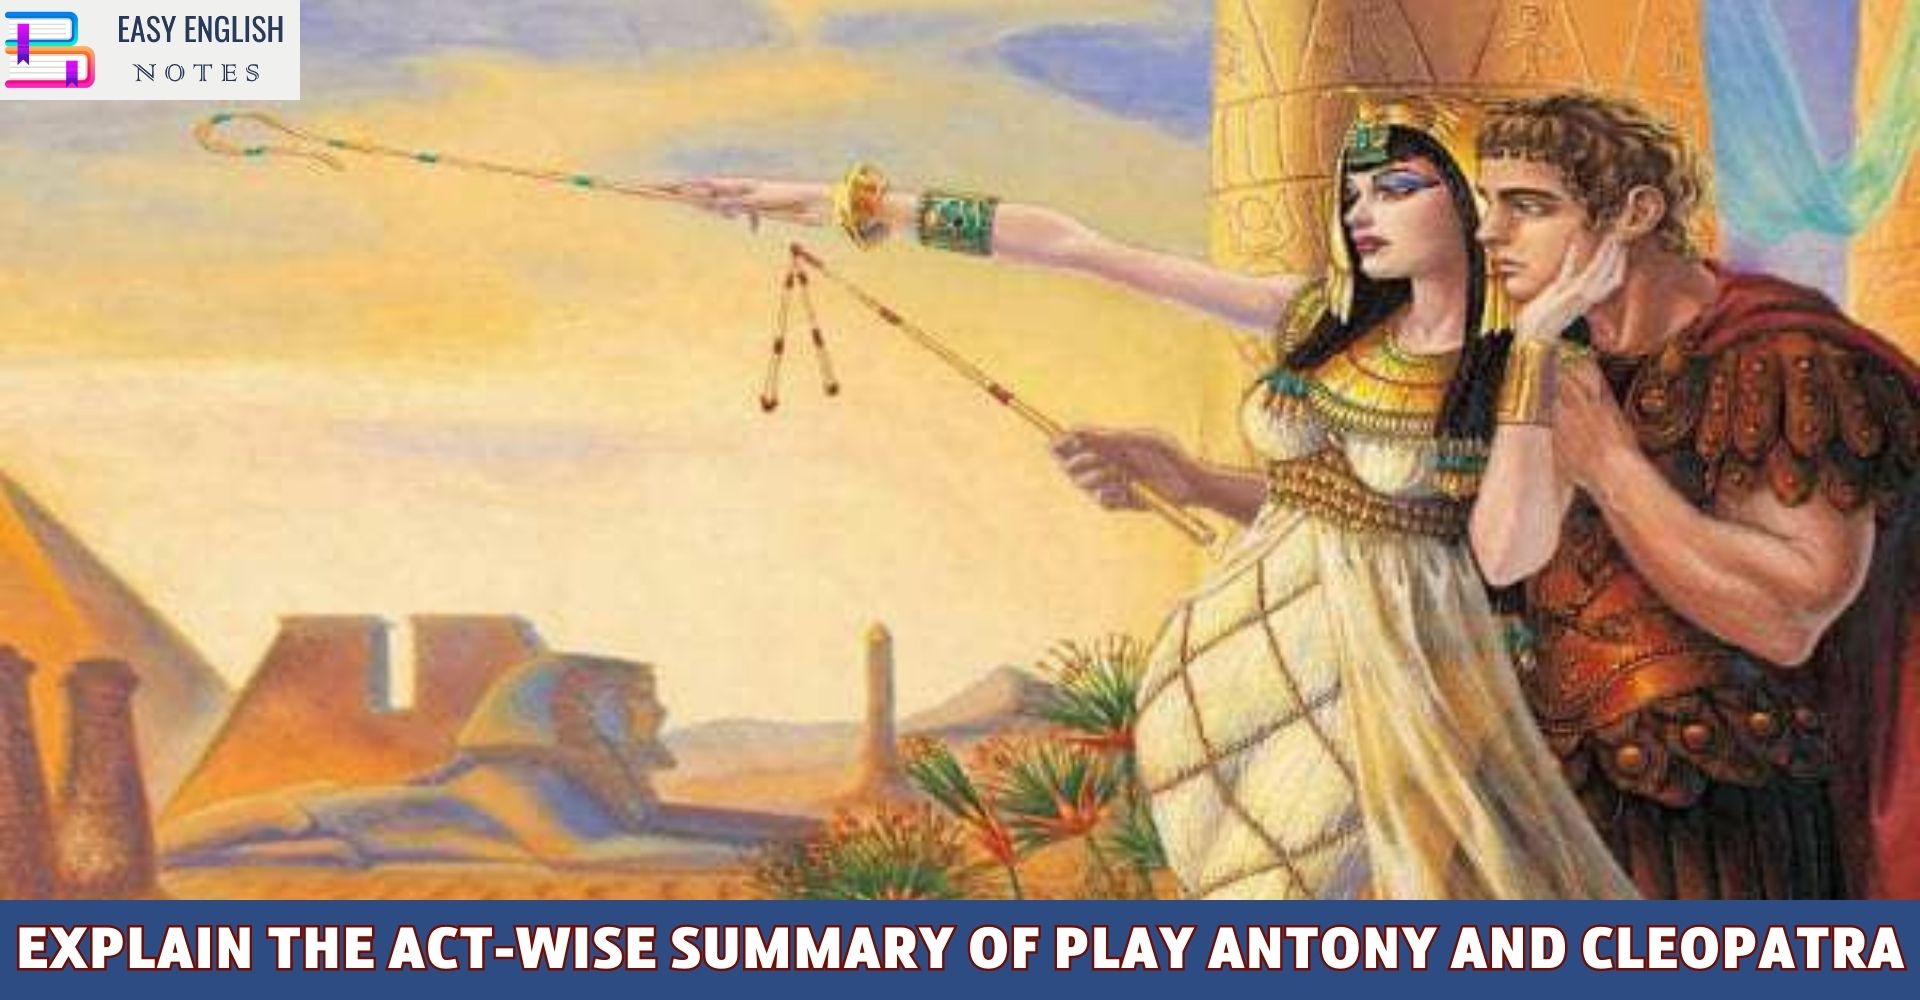 Explain the Act-wise summary of play Antony and Cleopatra